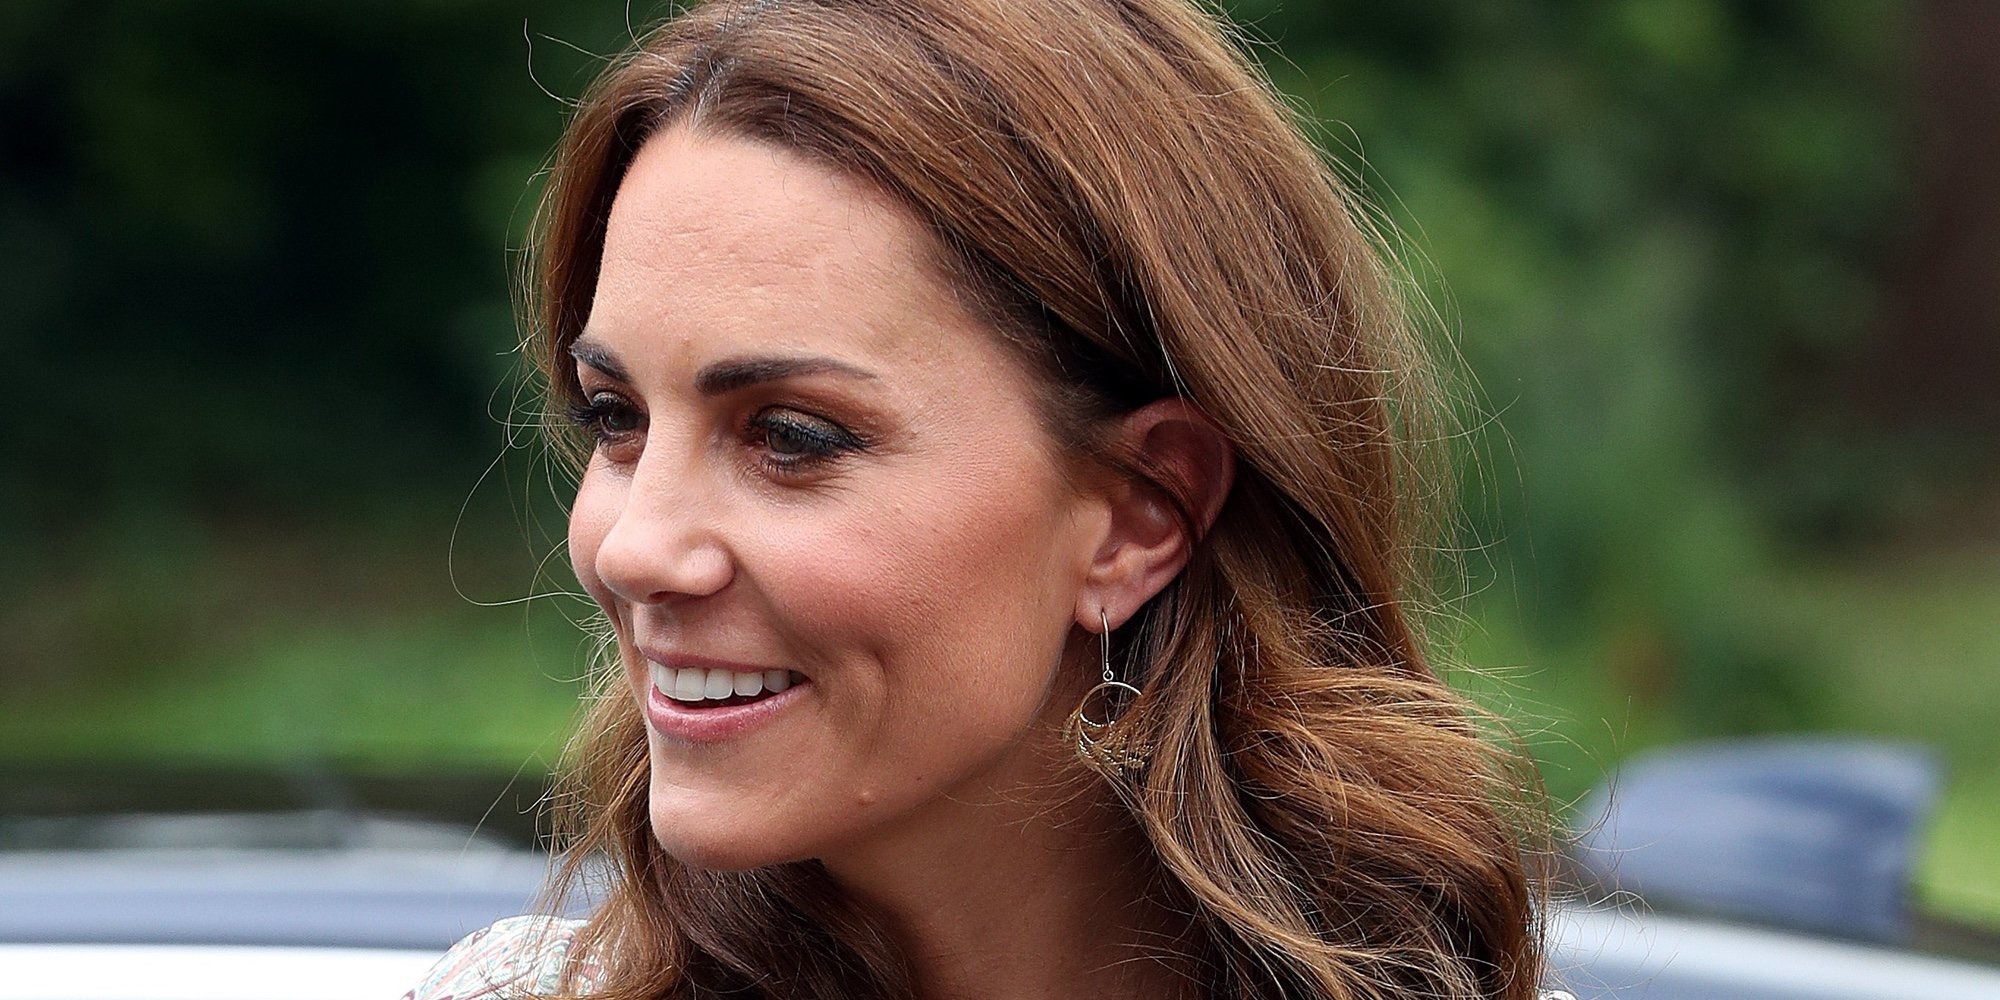 La secretaria personal de Kate Middleton abandona su puesto después de solo dos años trabajando con ella